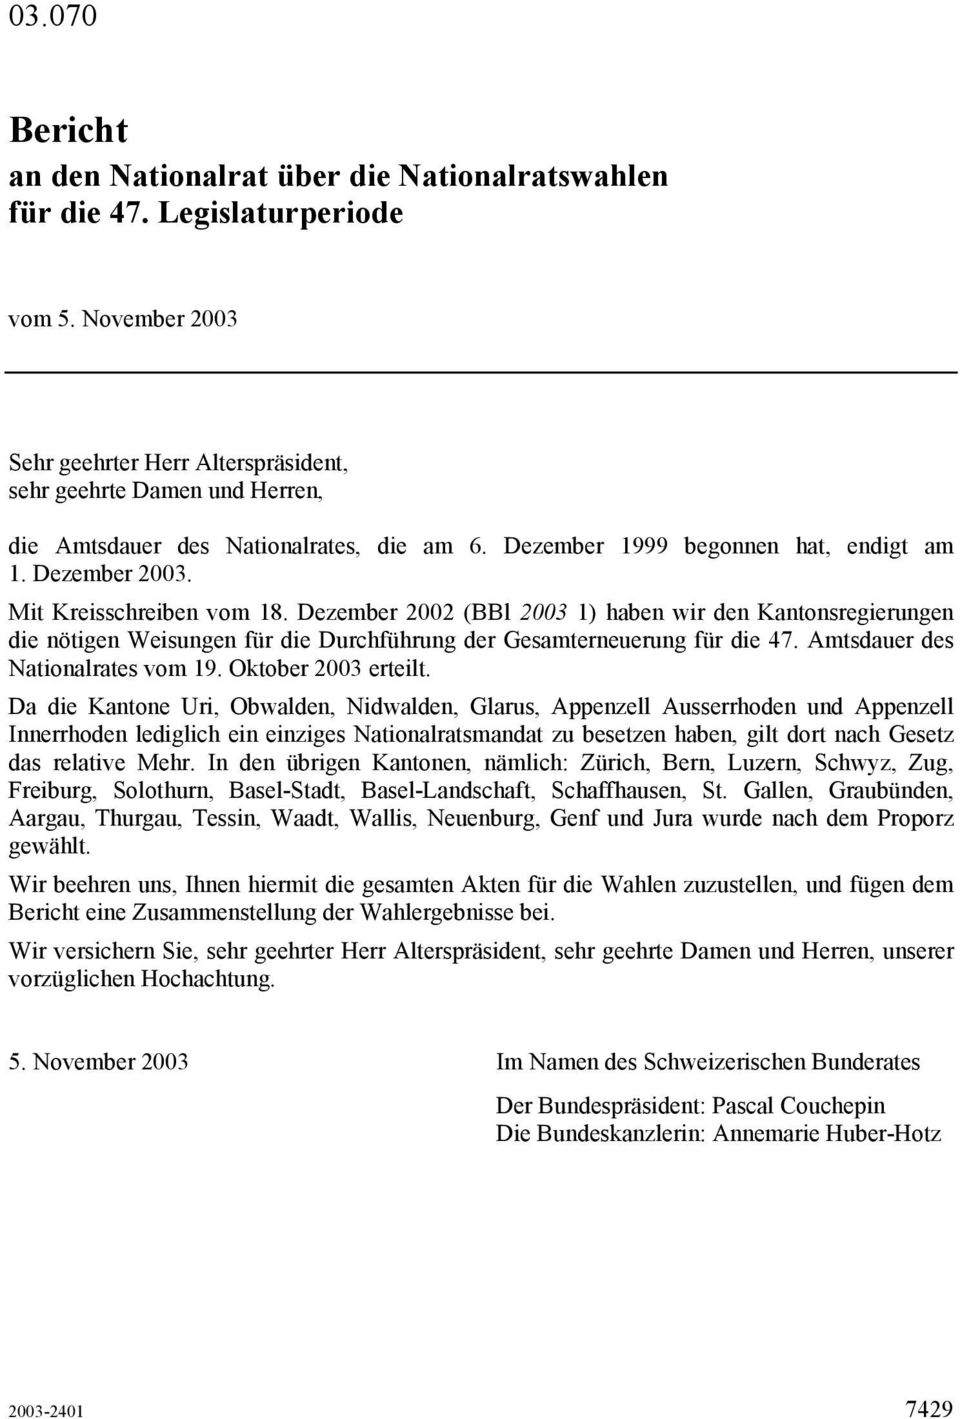 Mit Kreisschreiben vom 18. Dezember 2002 (BBl 2003 1) haben wir den Kantonsregierungen die nötigen Weisungen für die Durchführung der Gesamterneuerung für die 47. Amtsdauer des Nationalrates vom 19.